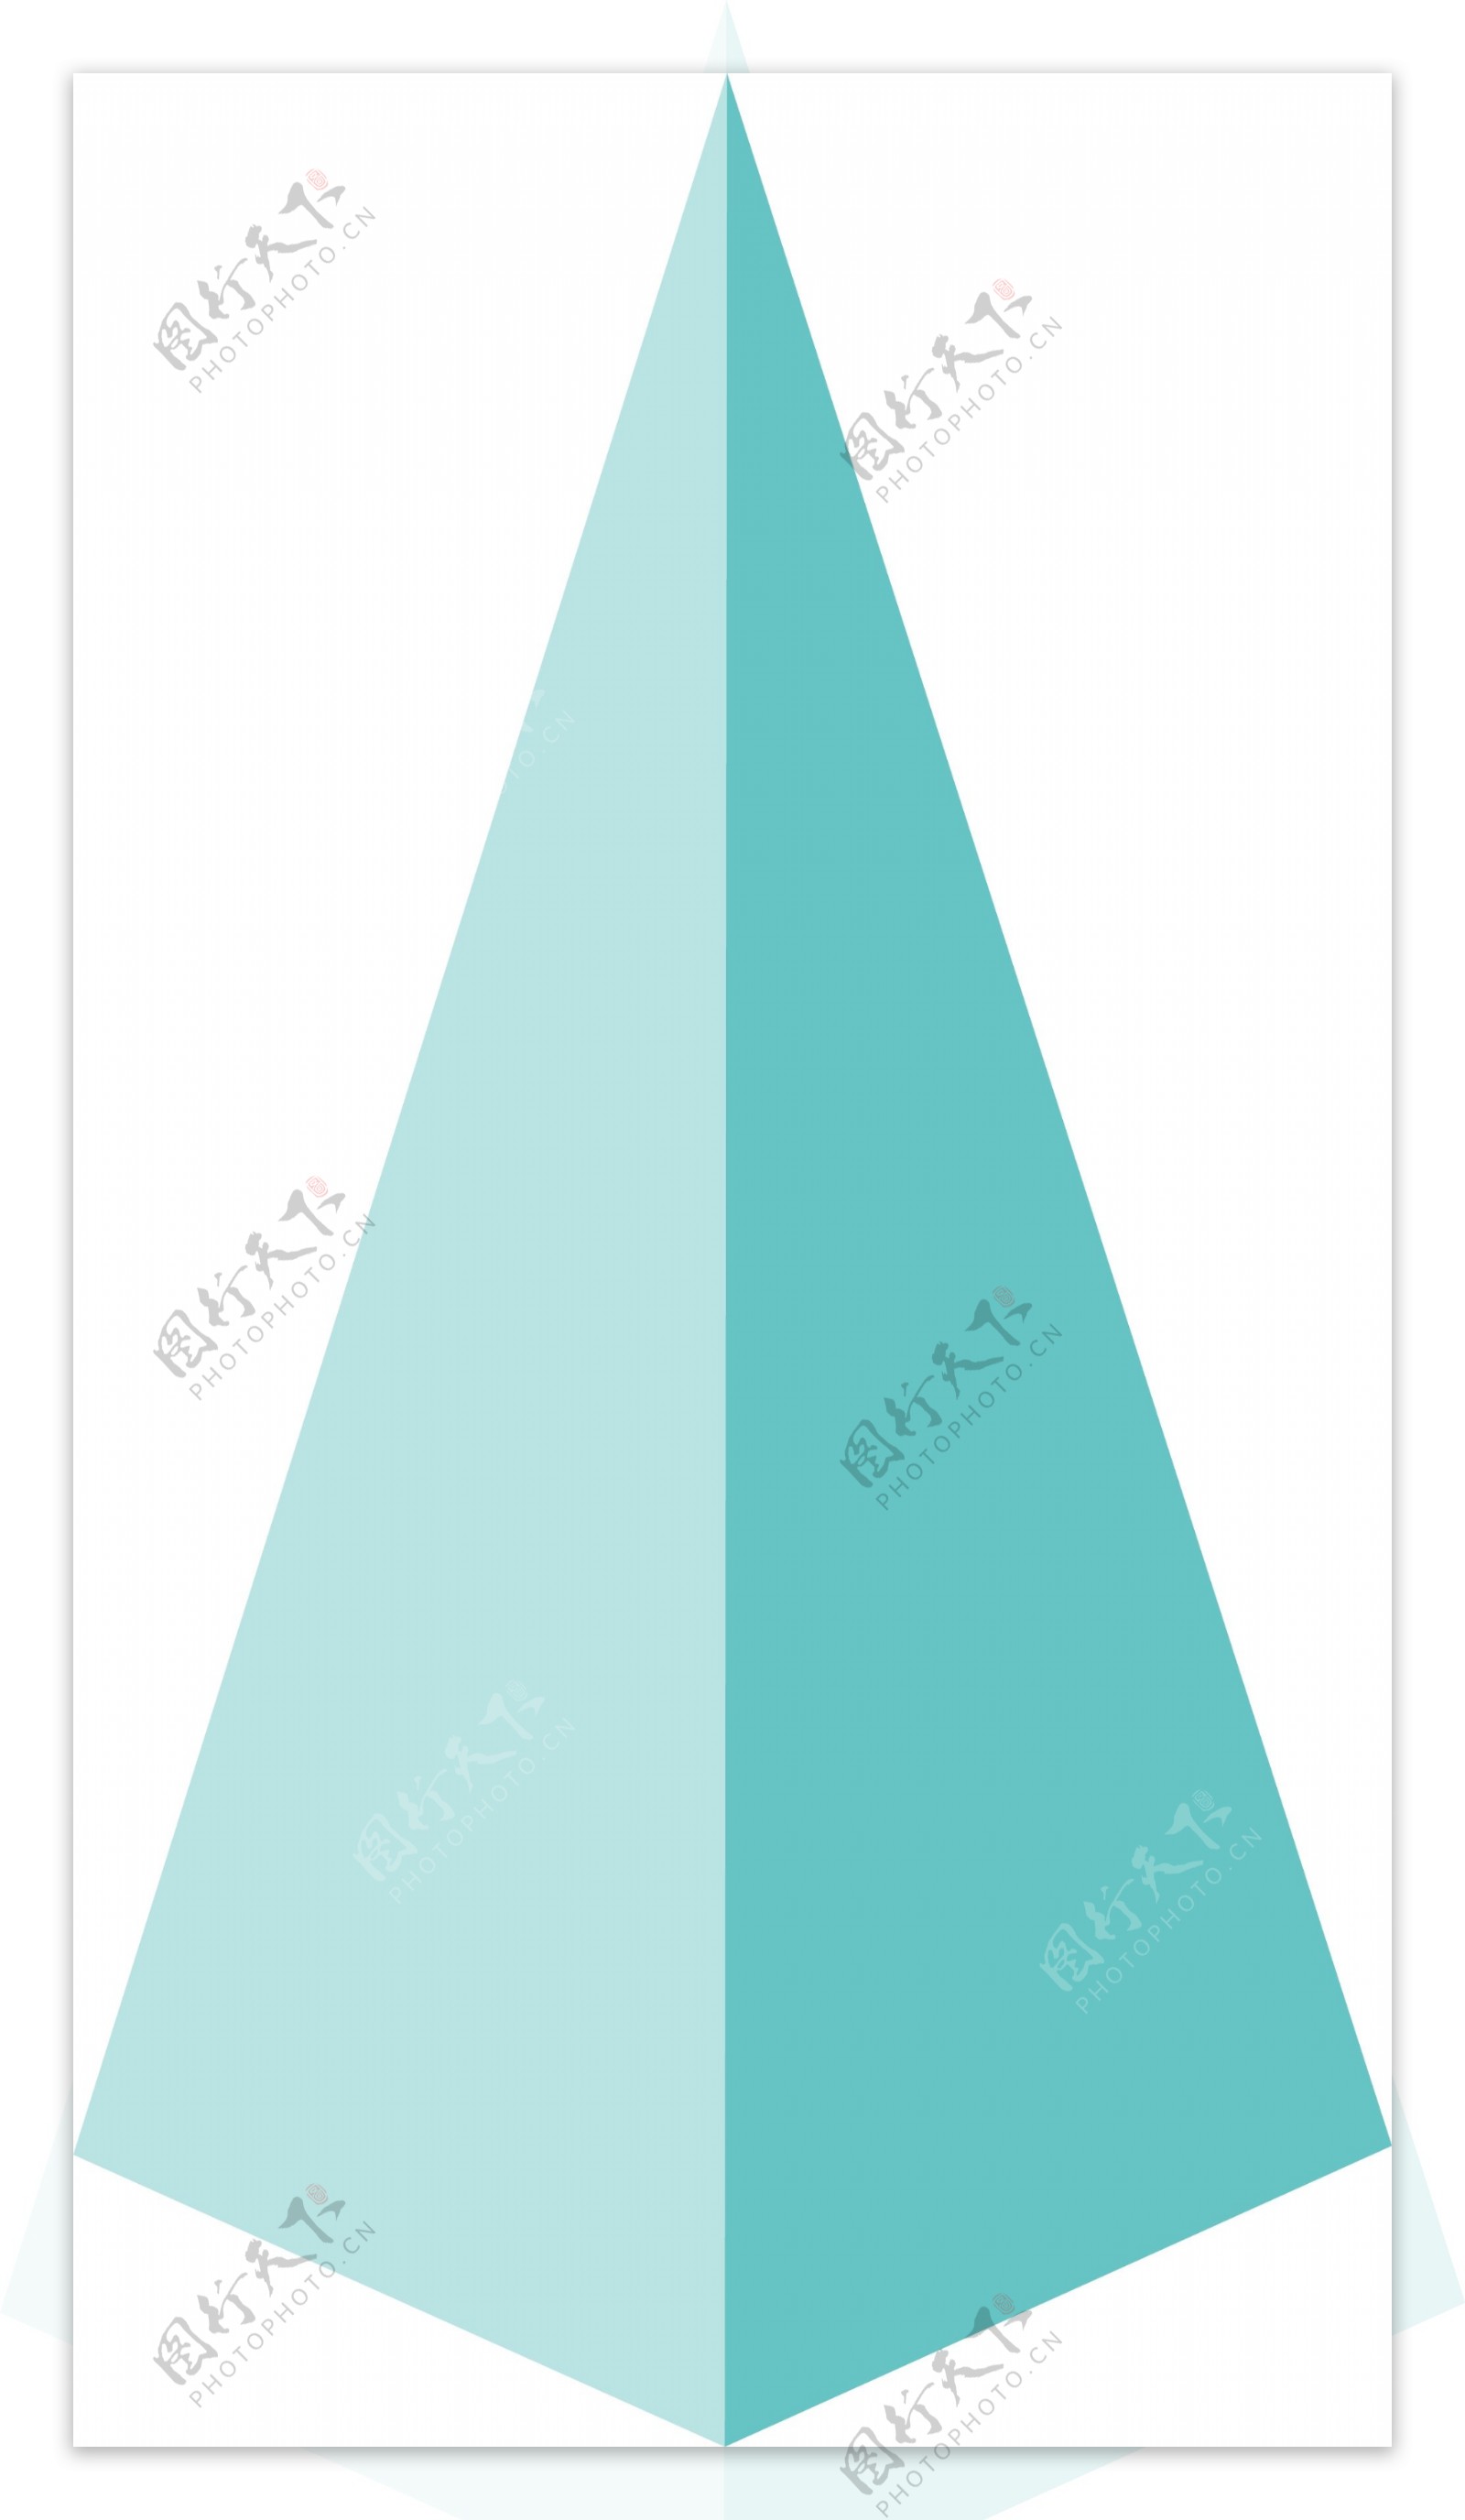 蓝色小山三角形